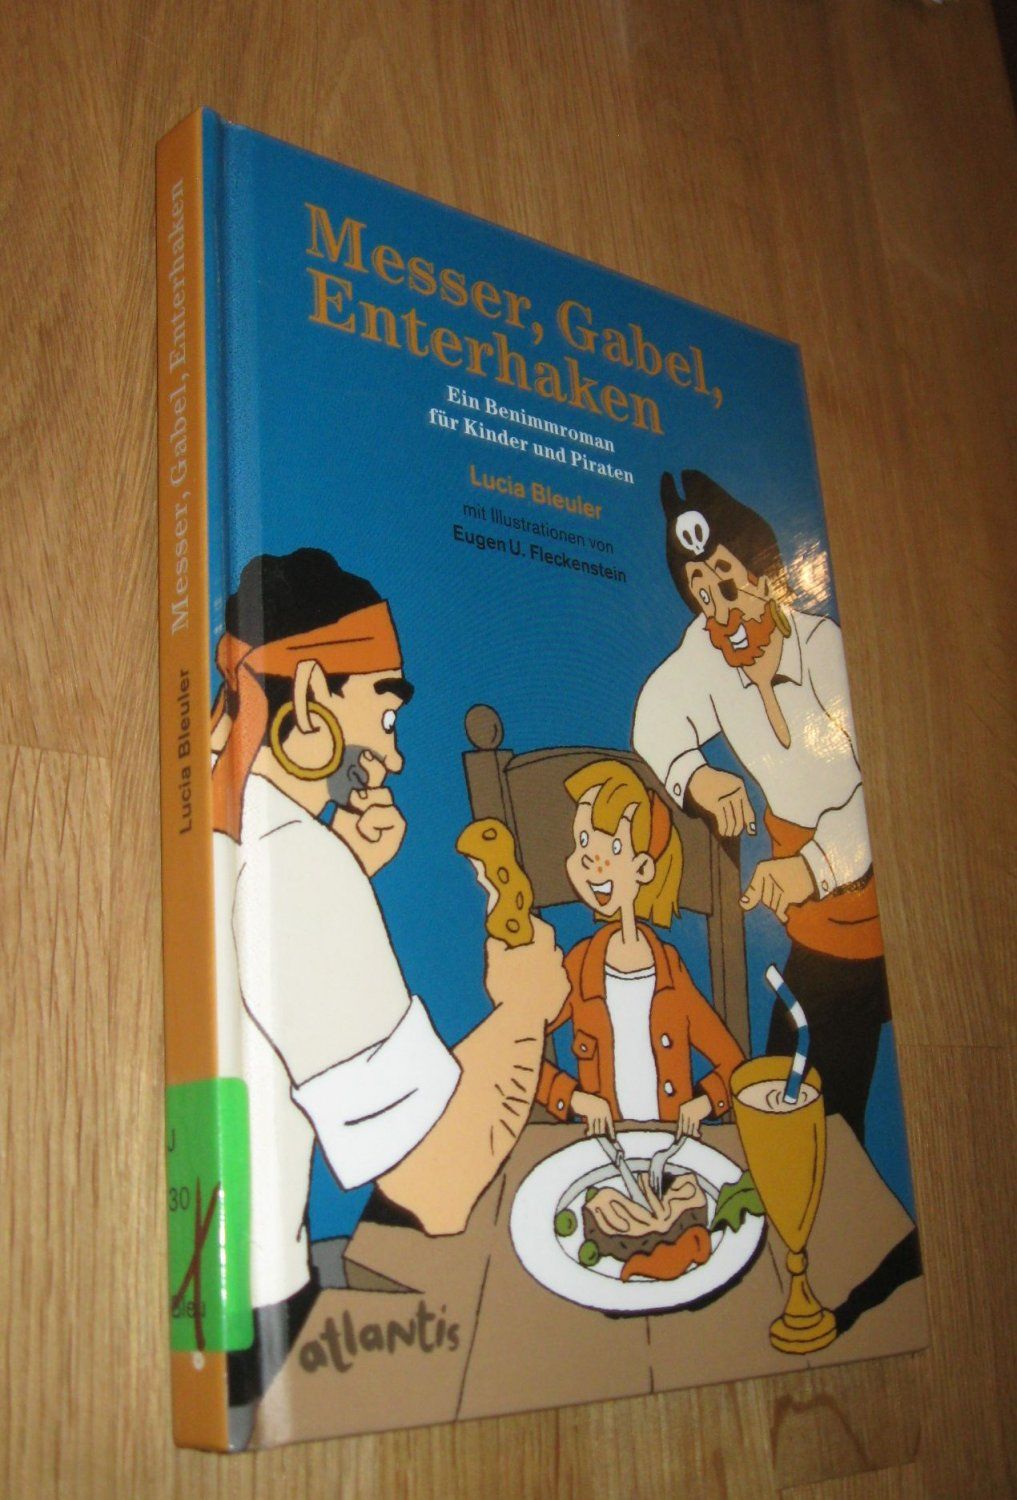 Messer, Gabel, Enterhaken. Ein Benimmroman für Kinder und Piraten  5. oder spätere Auflage - Lucia Bleuler